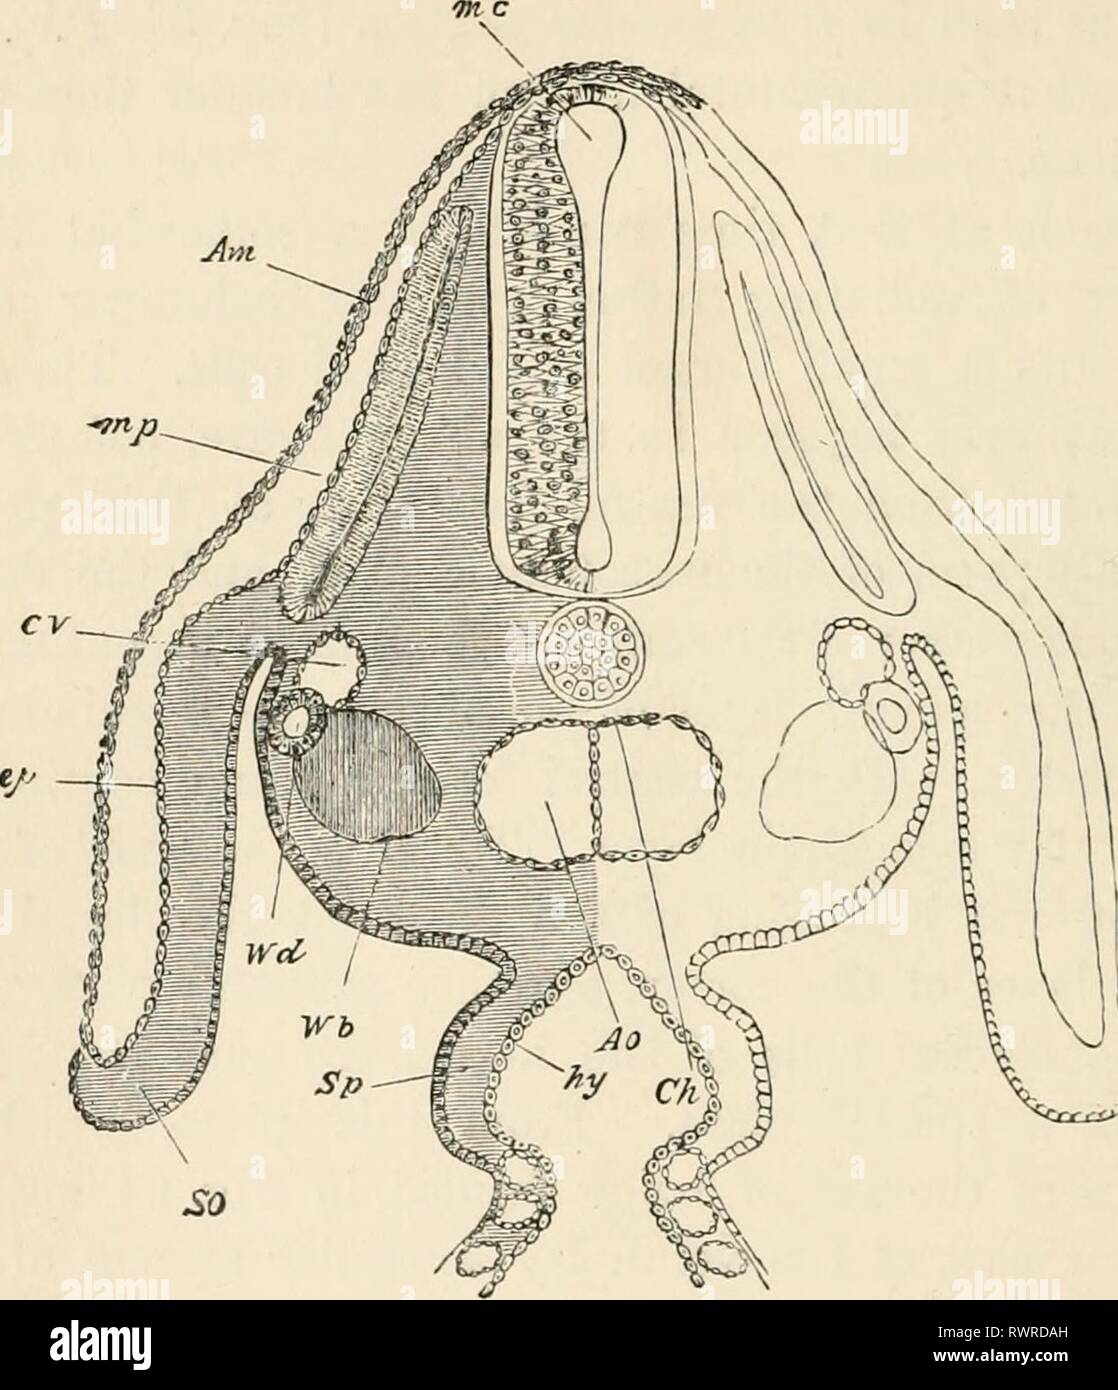 Les éléments d'embryologie (1889) Les éléments d'embryologie humaine elementsofembryo fostuoft Année : 1889 100 188 LE TROISIÈME JOUR. Fig. 65. [CriAP J Section par l'intermédiaire de la région dorsale de l'embryon Poussin. À la fin du troisième jour. Am. amnios, député musculaire-plaque. C. C. cardinal d'idées. Ao. aorte dorsale. La section passe par le point où l'aorte dorsale est juste de commencer à se diviser en deux branches. Ch. de la notochorde. W. d. AVolihan d'air. W. b. à partir de la différenciation du mésoblaste cellules à former le corps de Wolff. cp. de l'épiblaste. Somatopleure et ectoblaste.. Sp. splanchno- pleure. hi/, l'hypoblaste. La section Banque D'Images